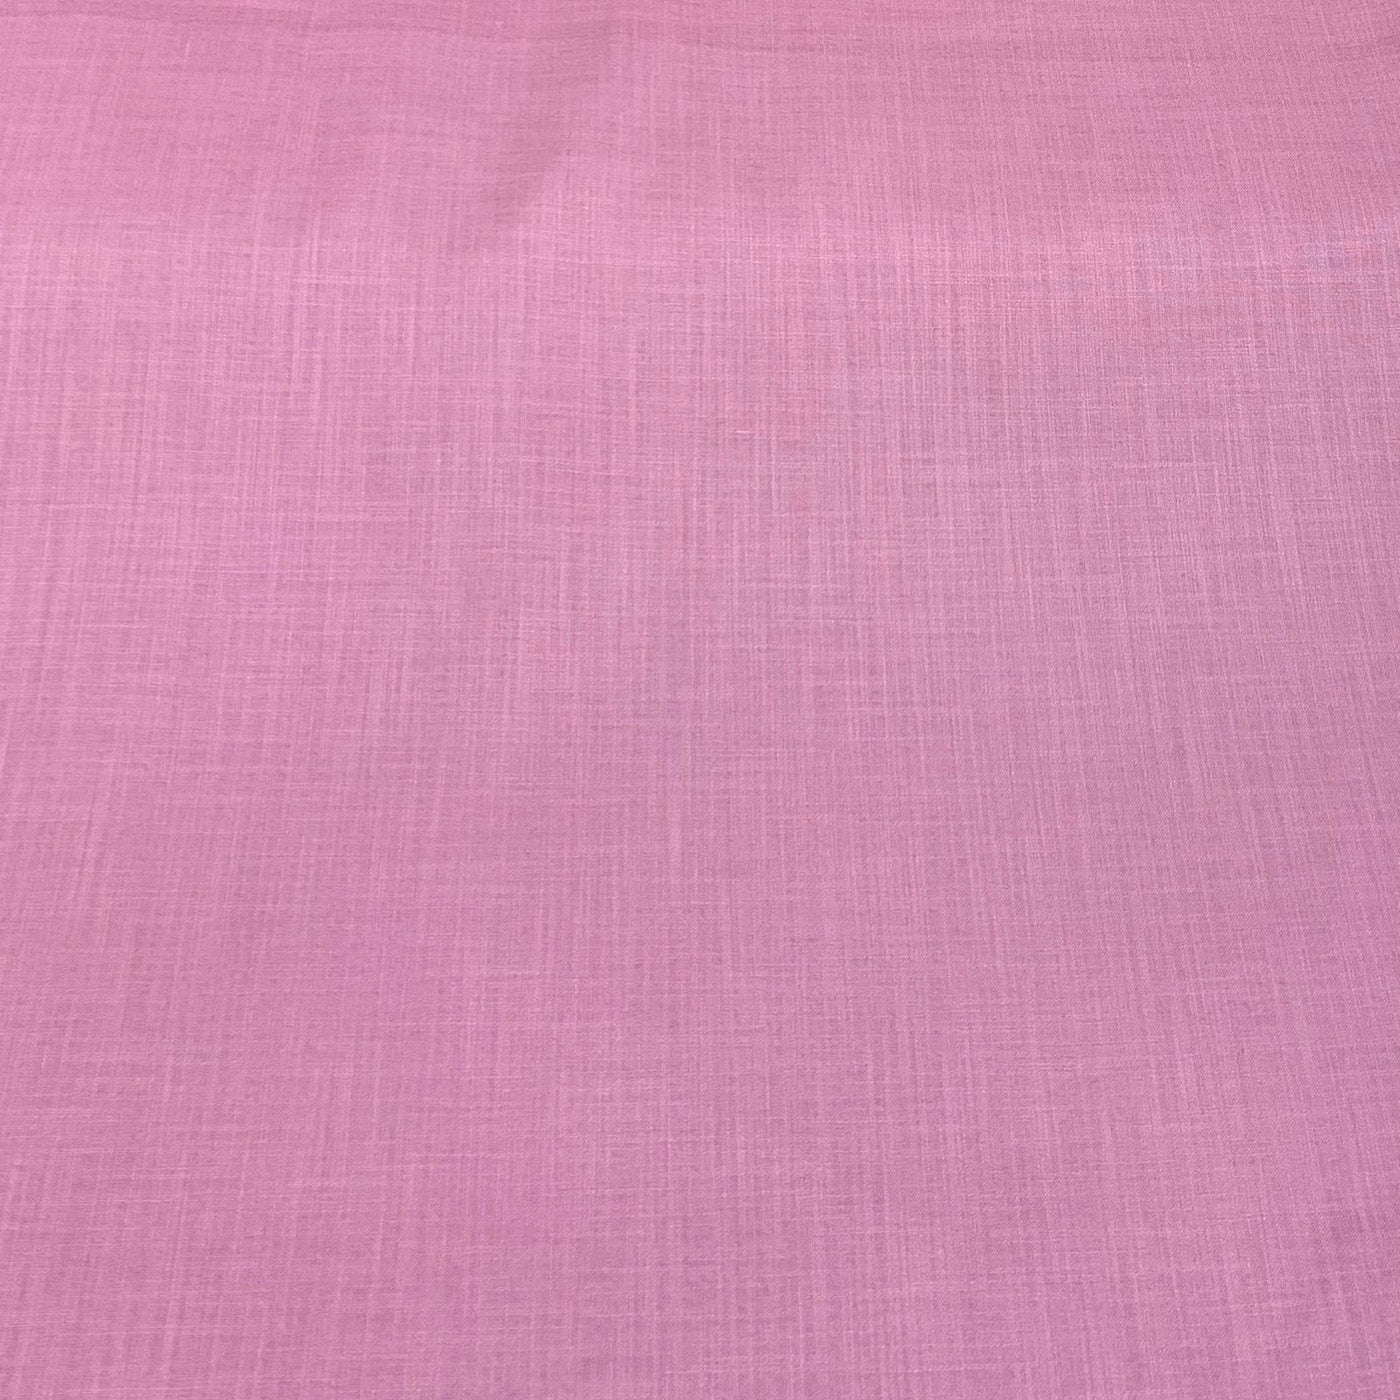 Pink Plain Cotton Matka Fabric